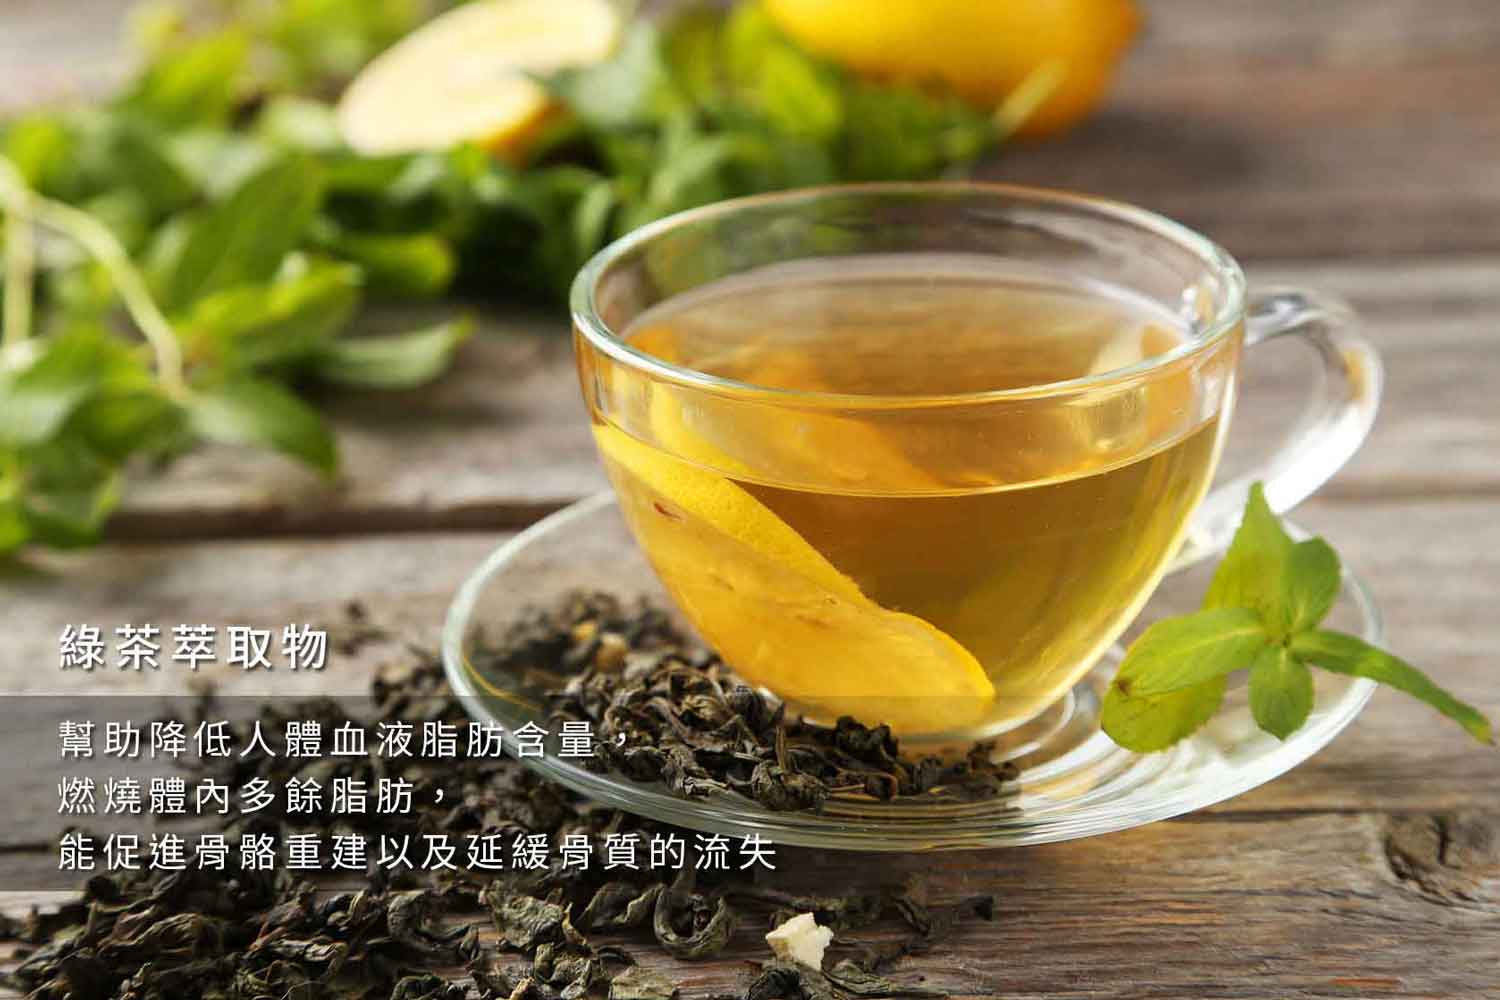 『讚恩』九種萃取物-綠茶萃取物(Green Tea Extract)